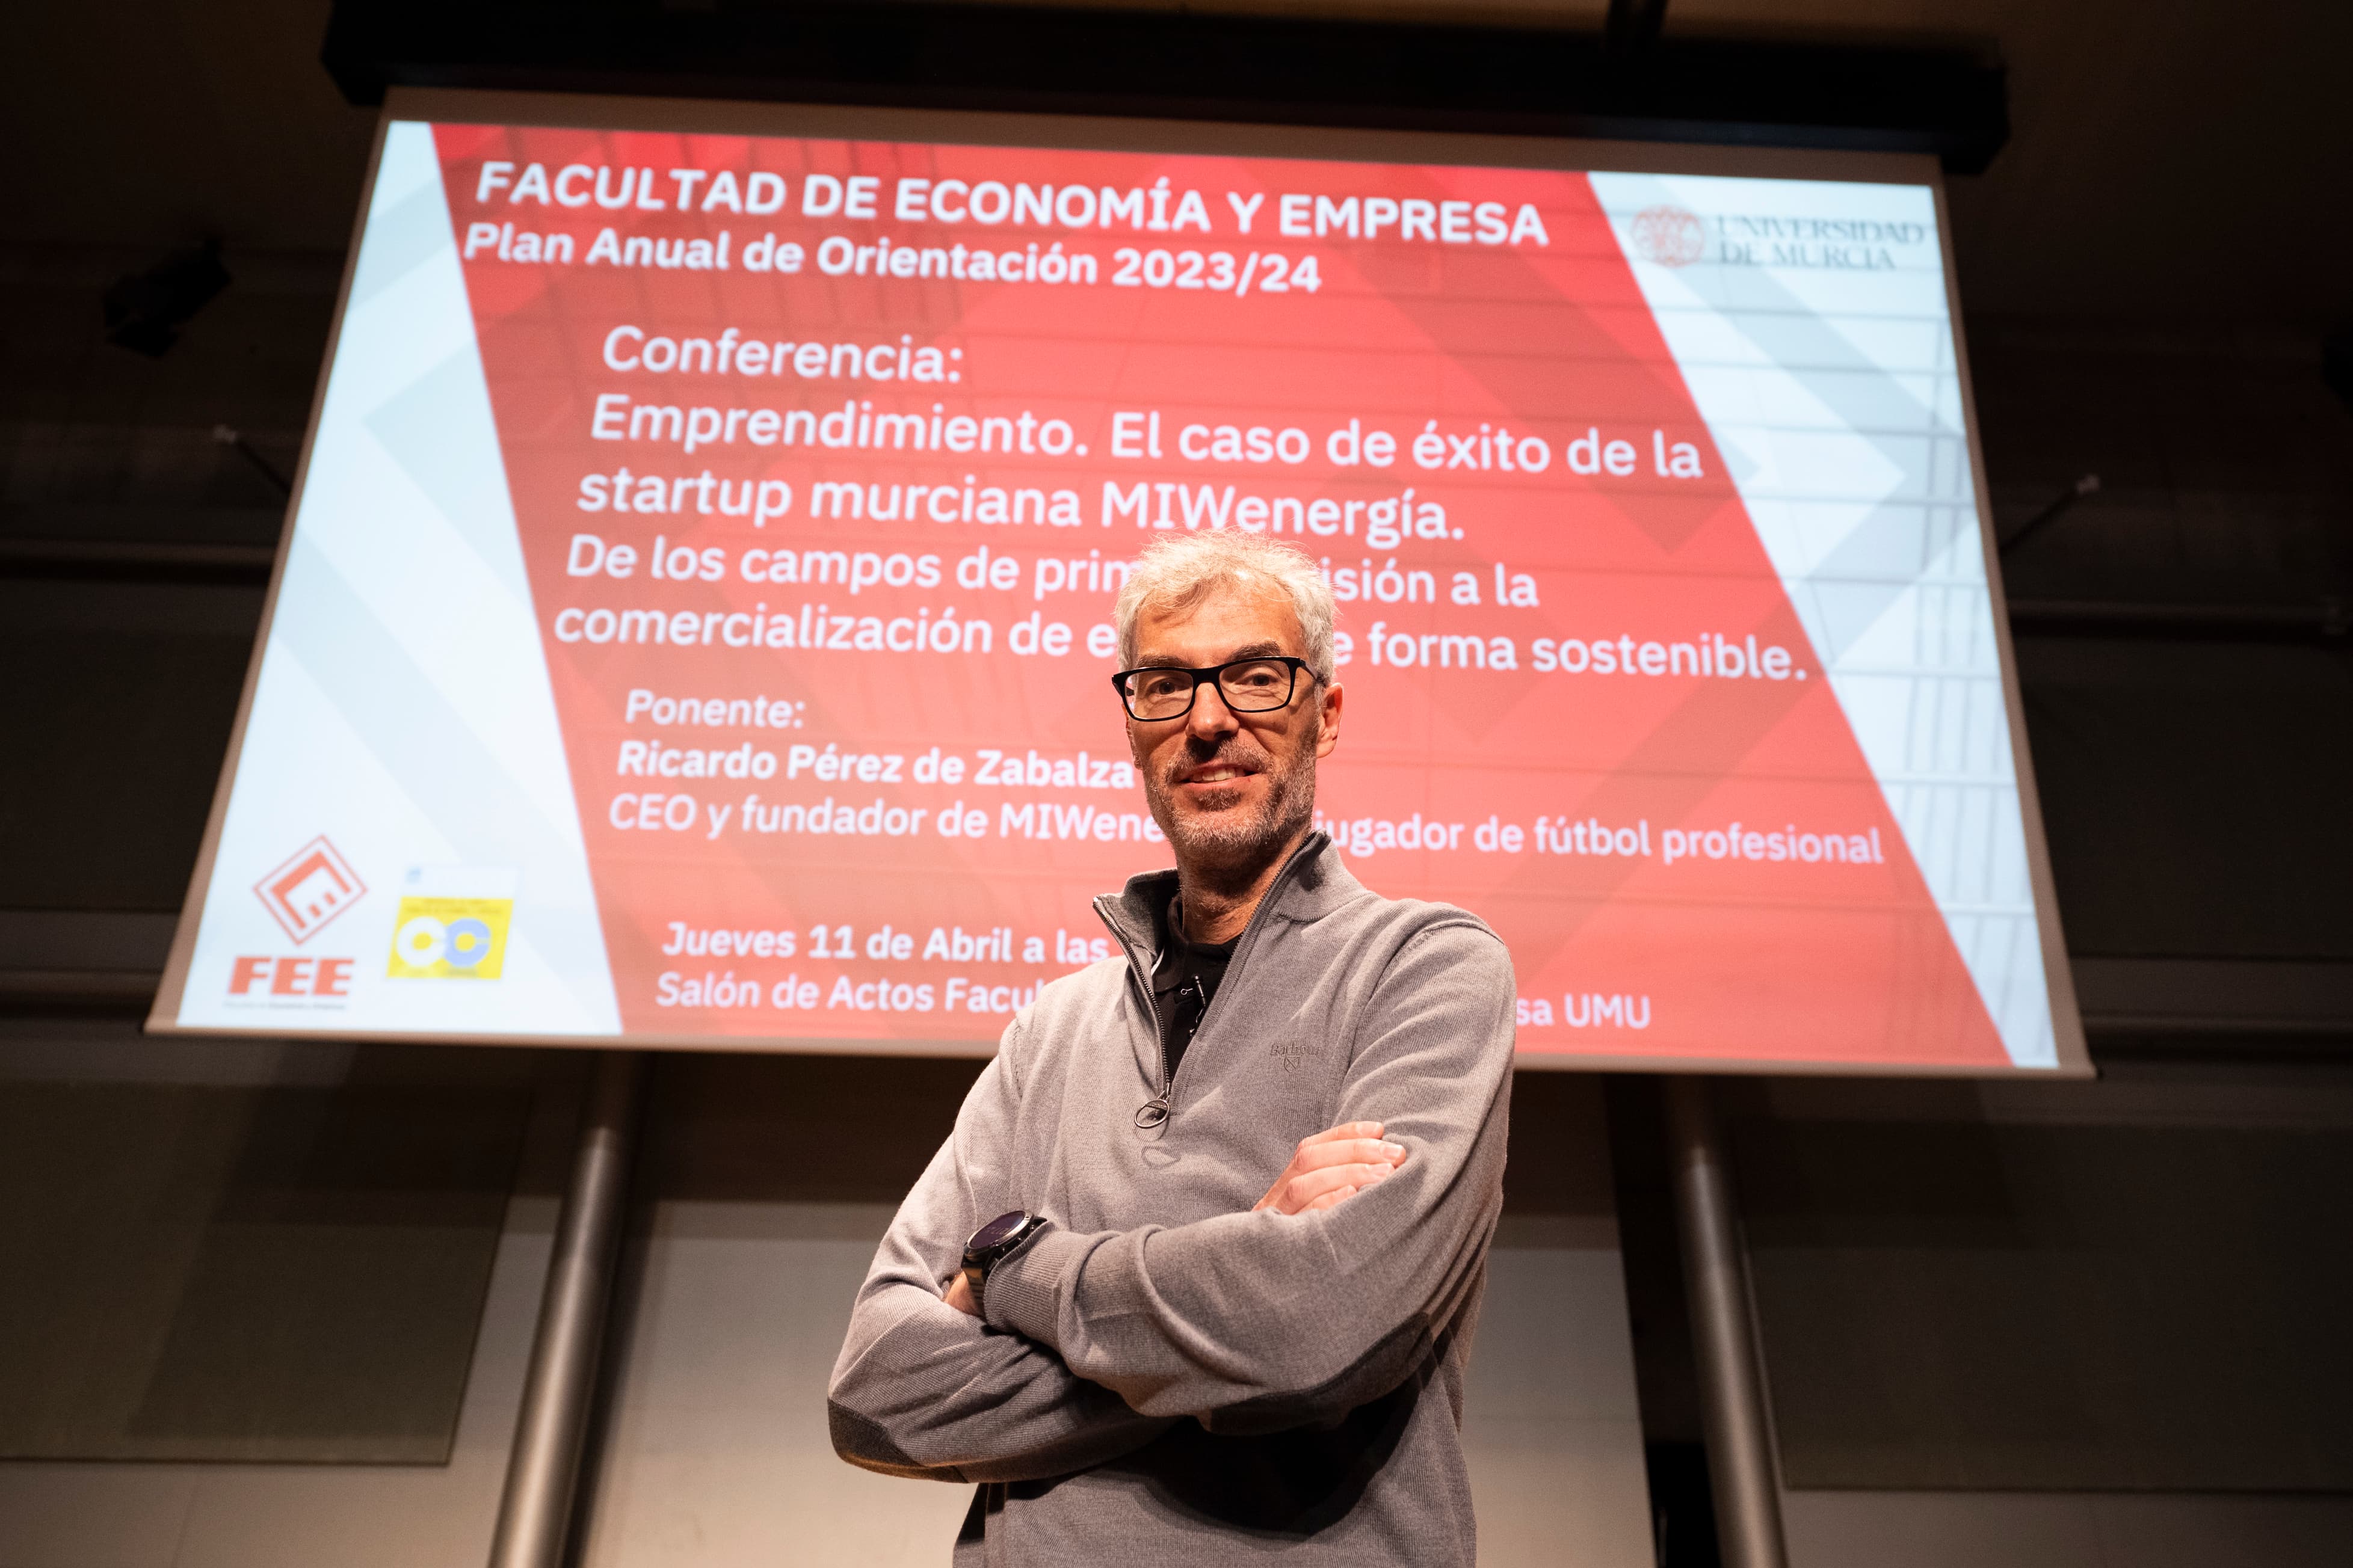 El exfutbolista Ricardo Pérez de Zabalza imparte una conferencia en la Facultad de Economía y Empresa para hablar del éxito de la startup murciana Miw Energía